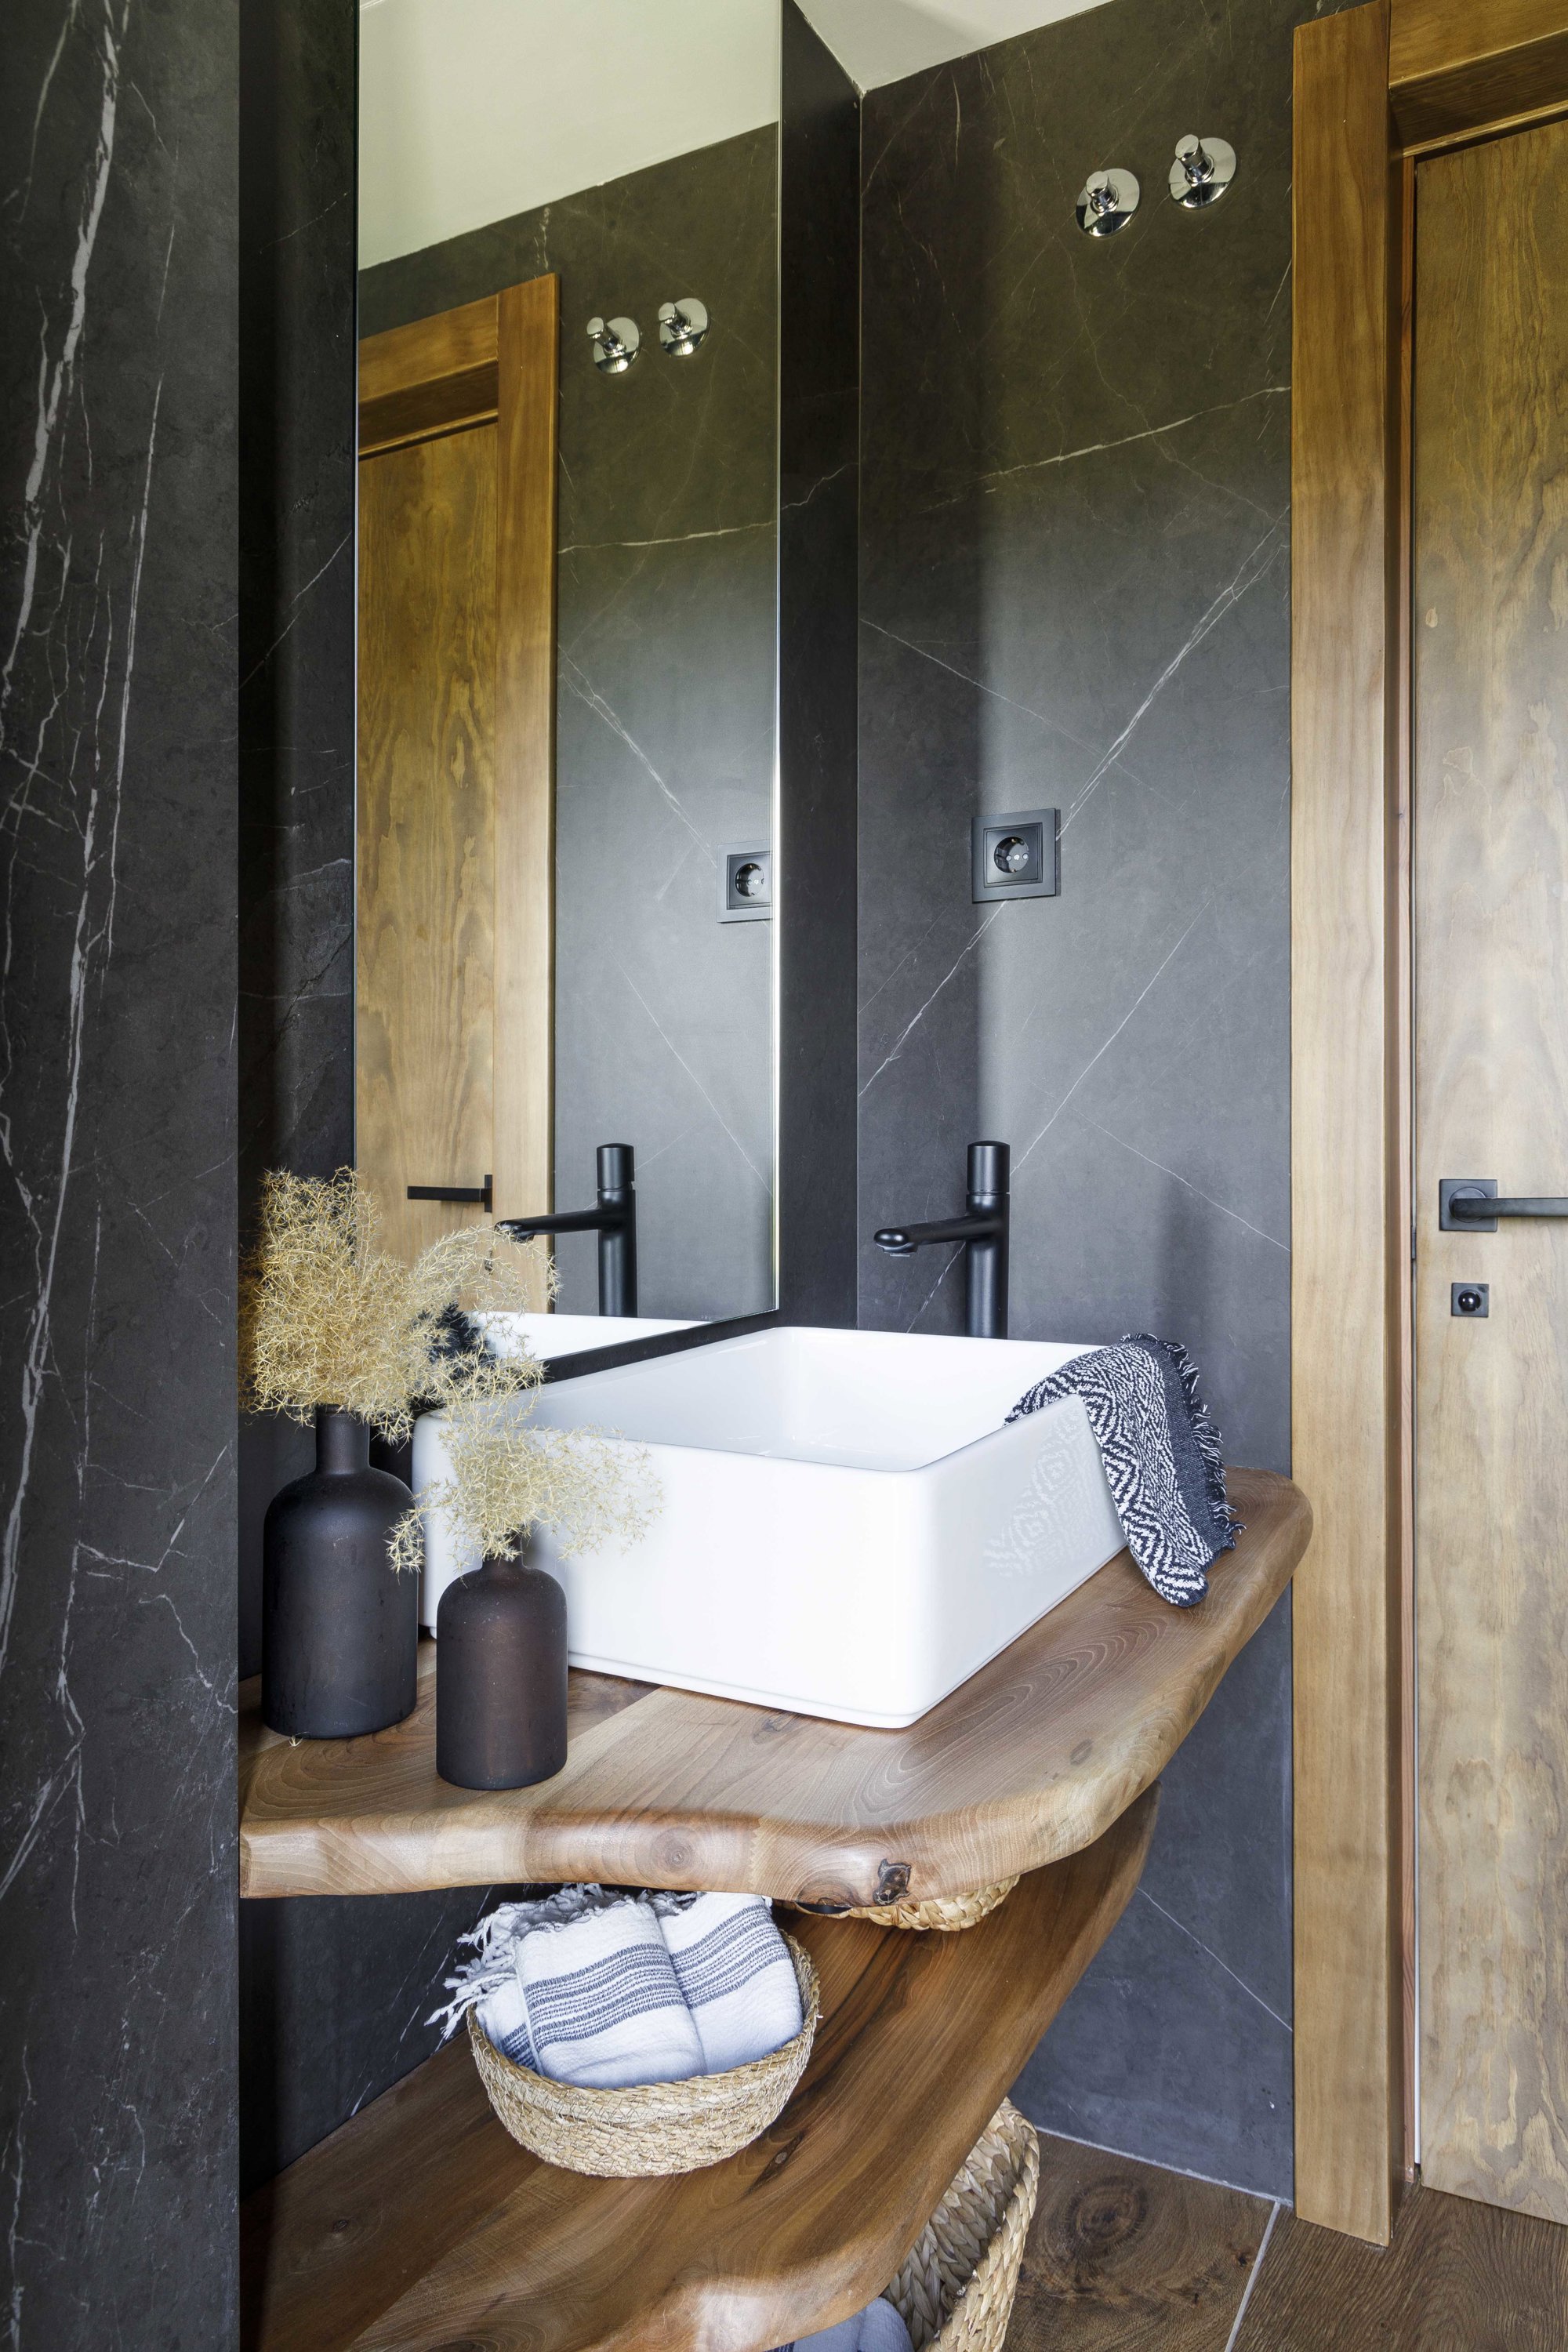 baño pequeño y rústico en negro y madera